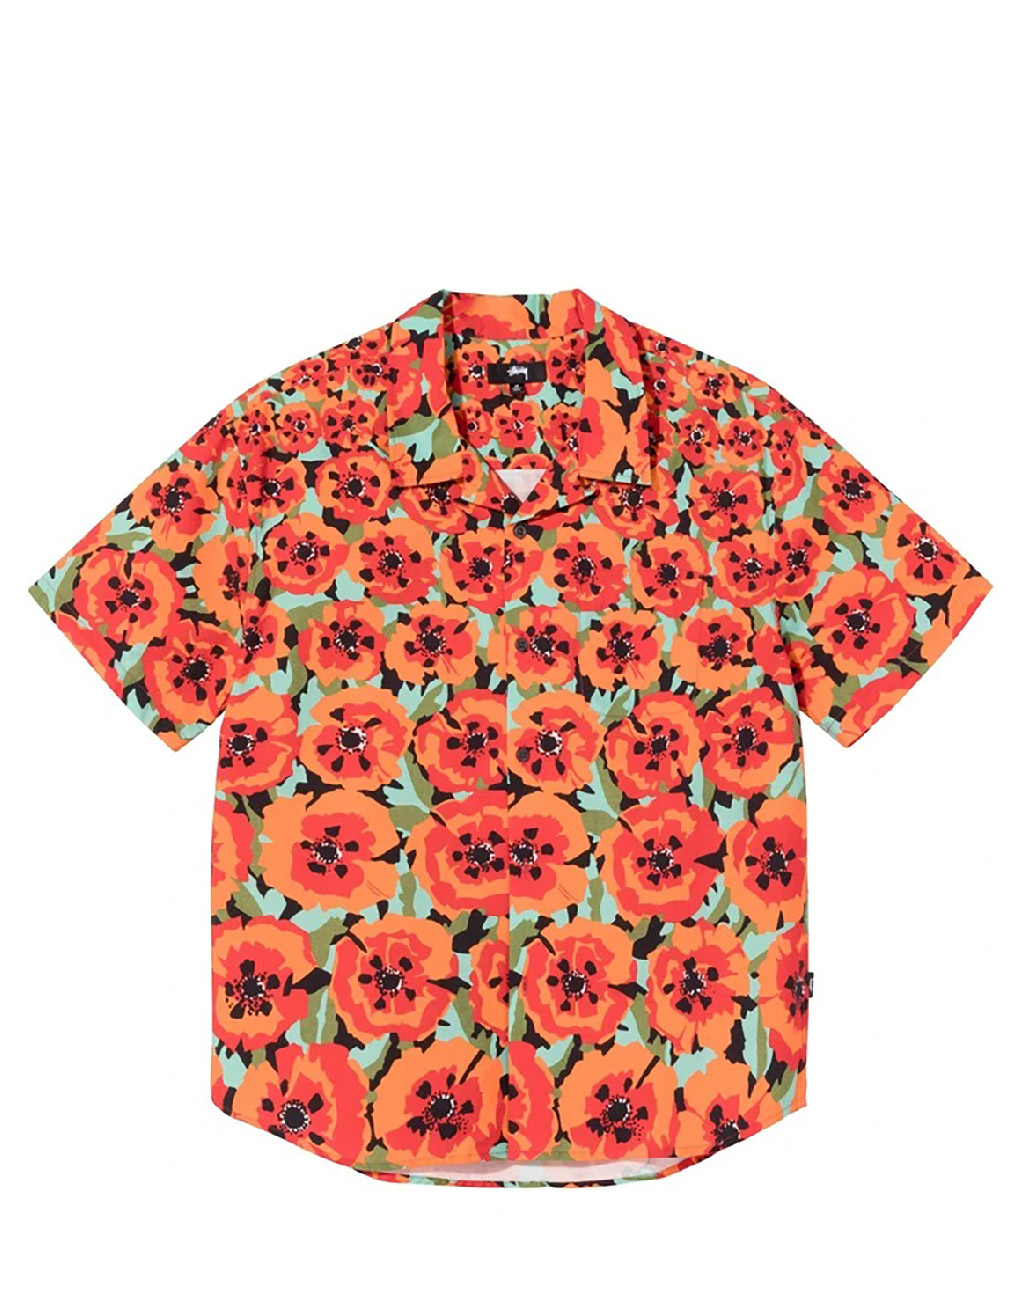 STÜSSY – Poppy shirt